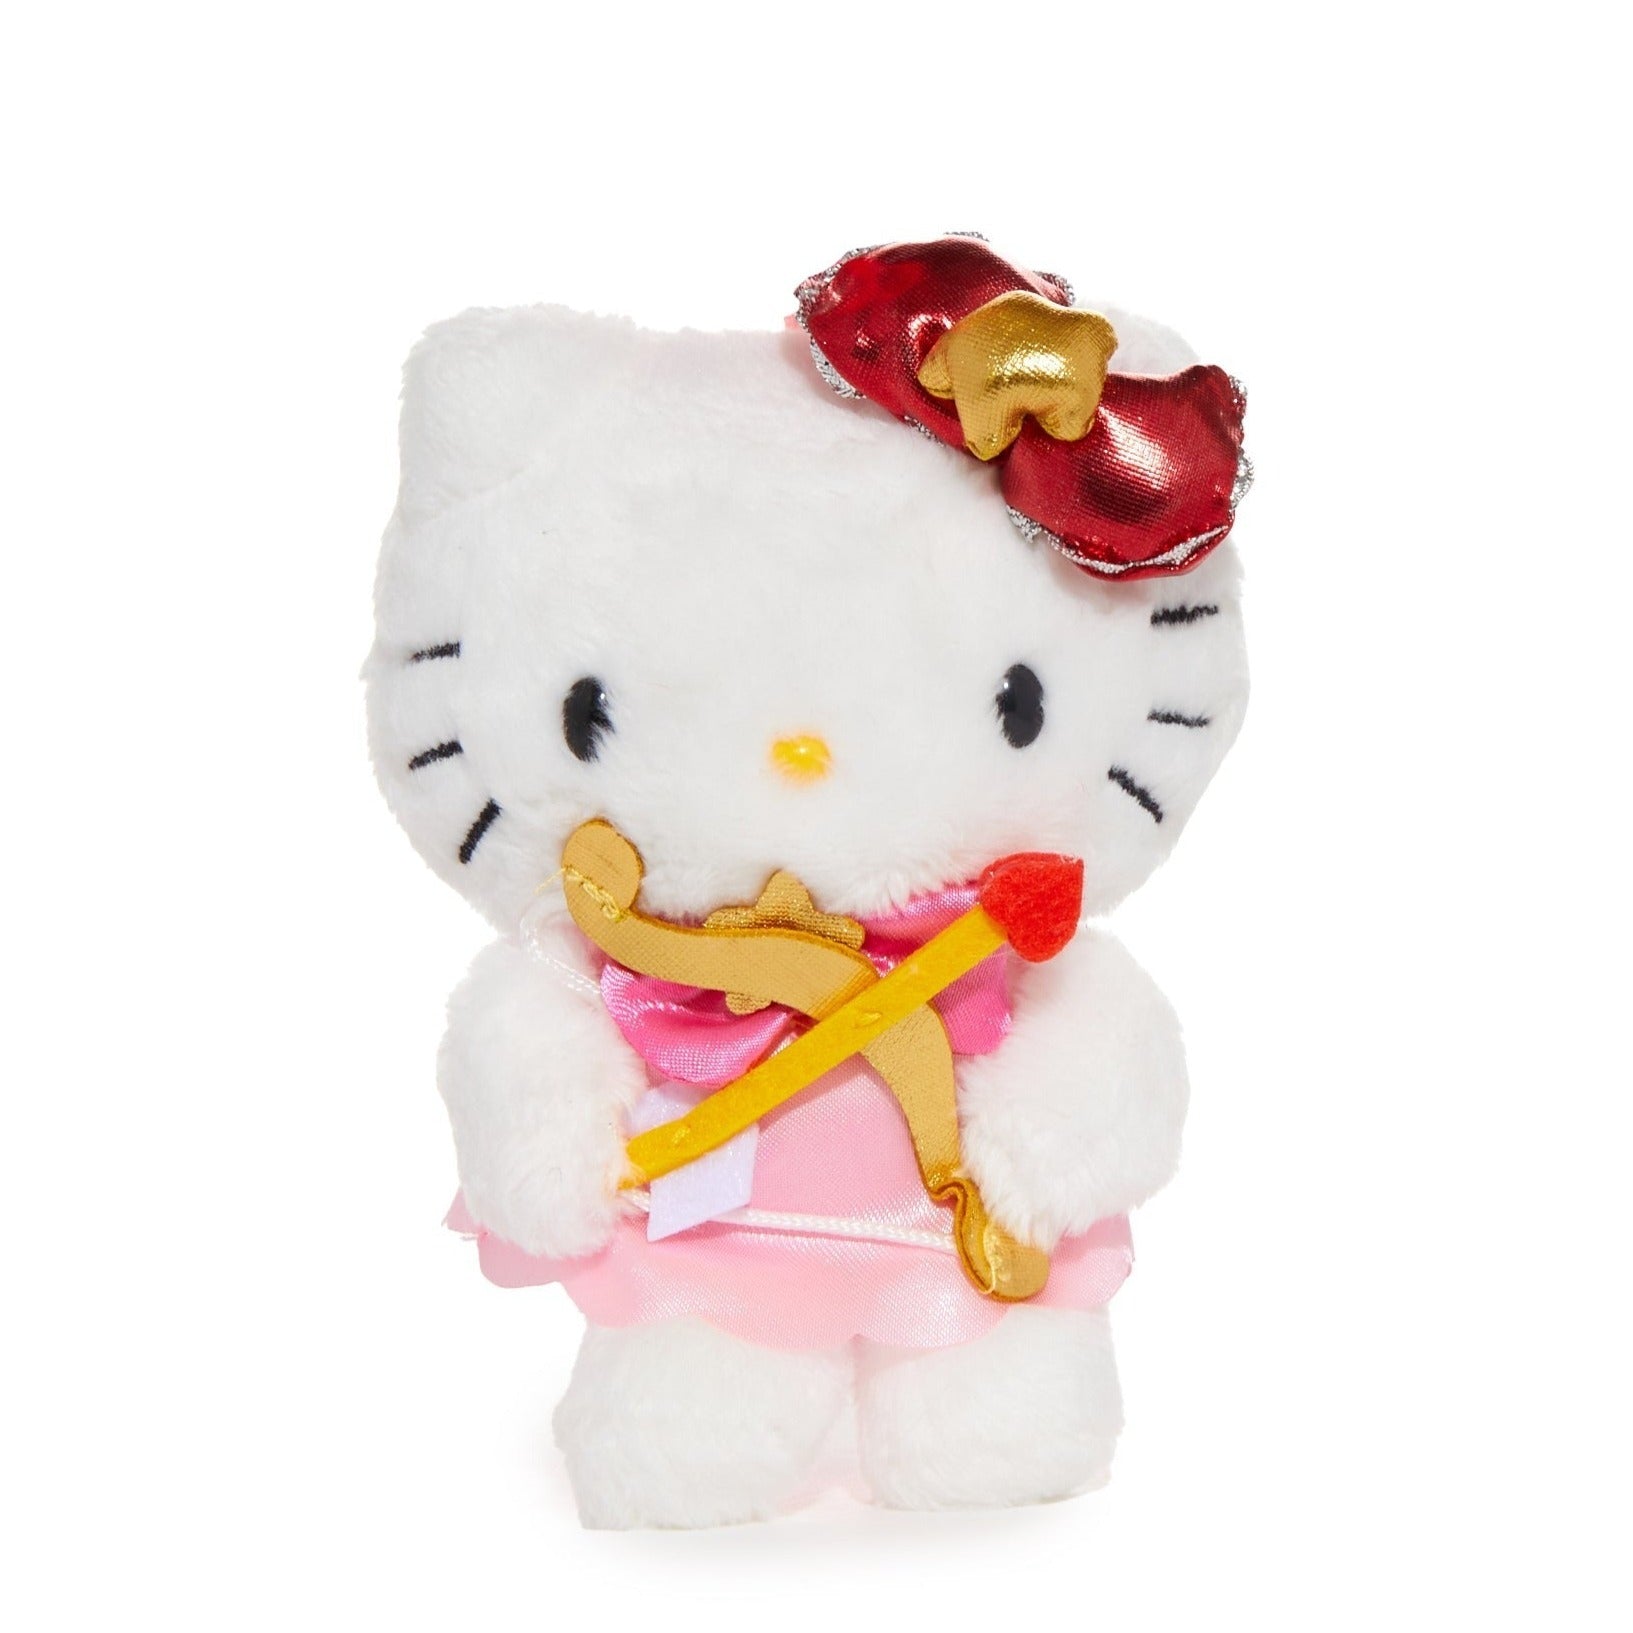 Hello Kitty Sagittarius Mascot Clip (Zodiac Series) Accessory NAKAJIMA CORPORATION   